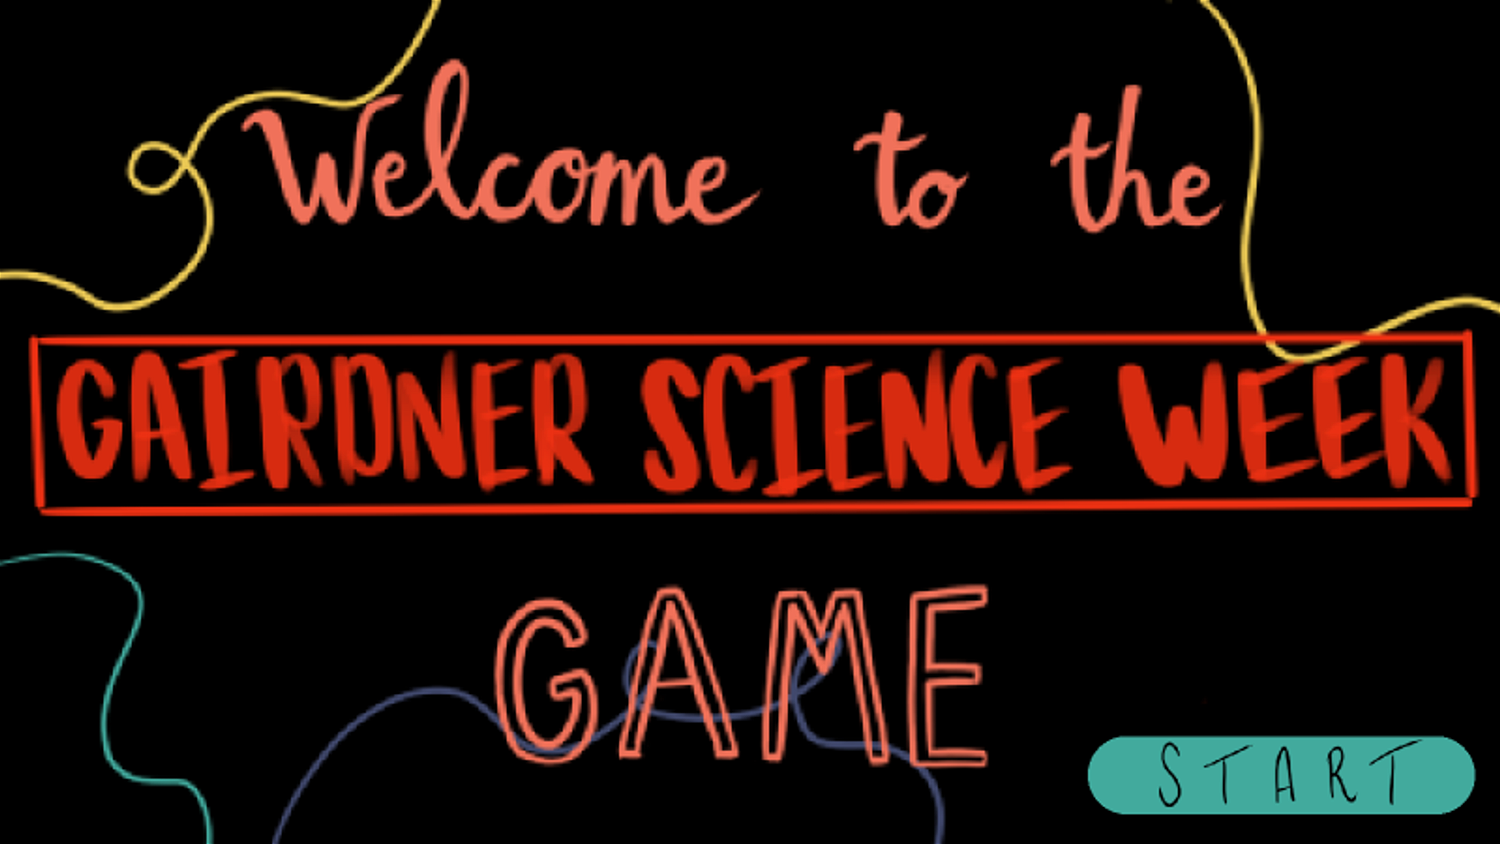 The Gairdner Science Week Game!